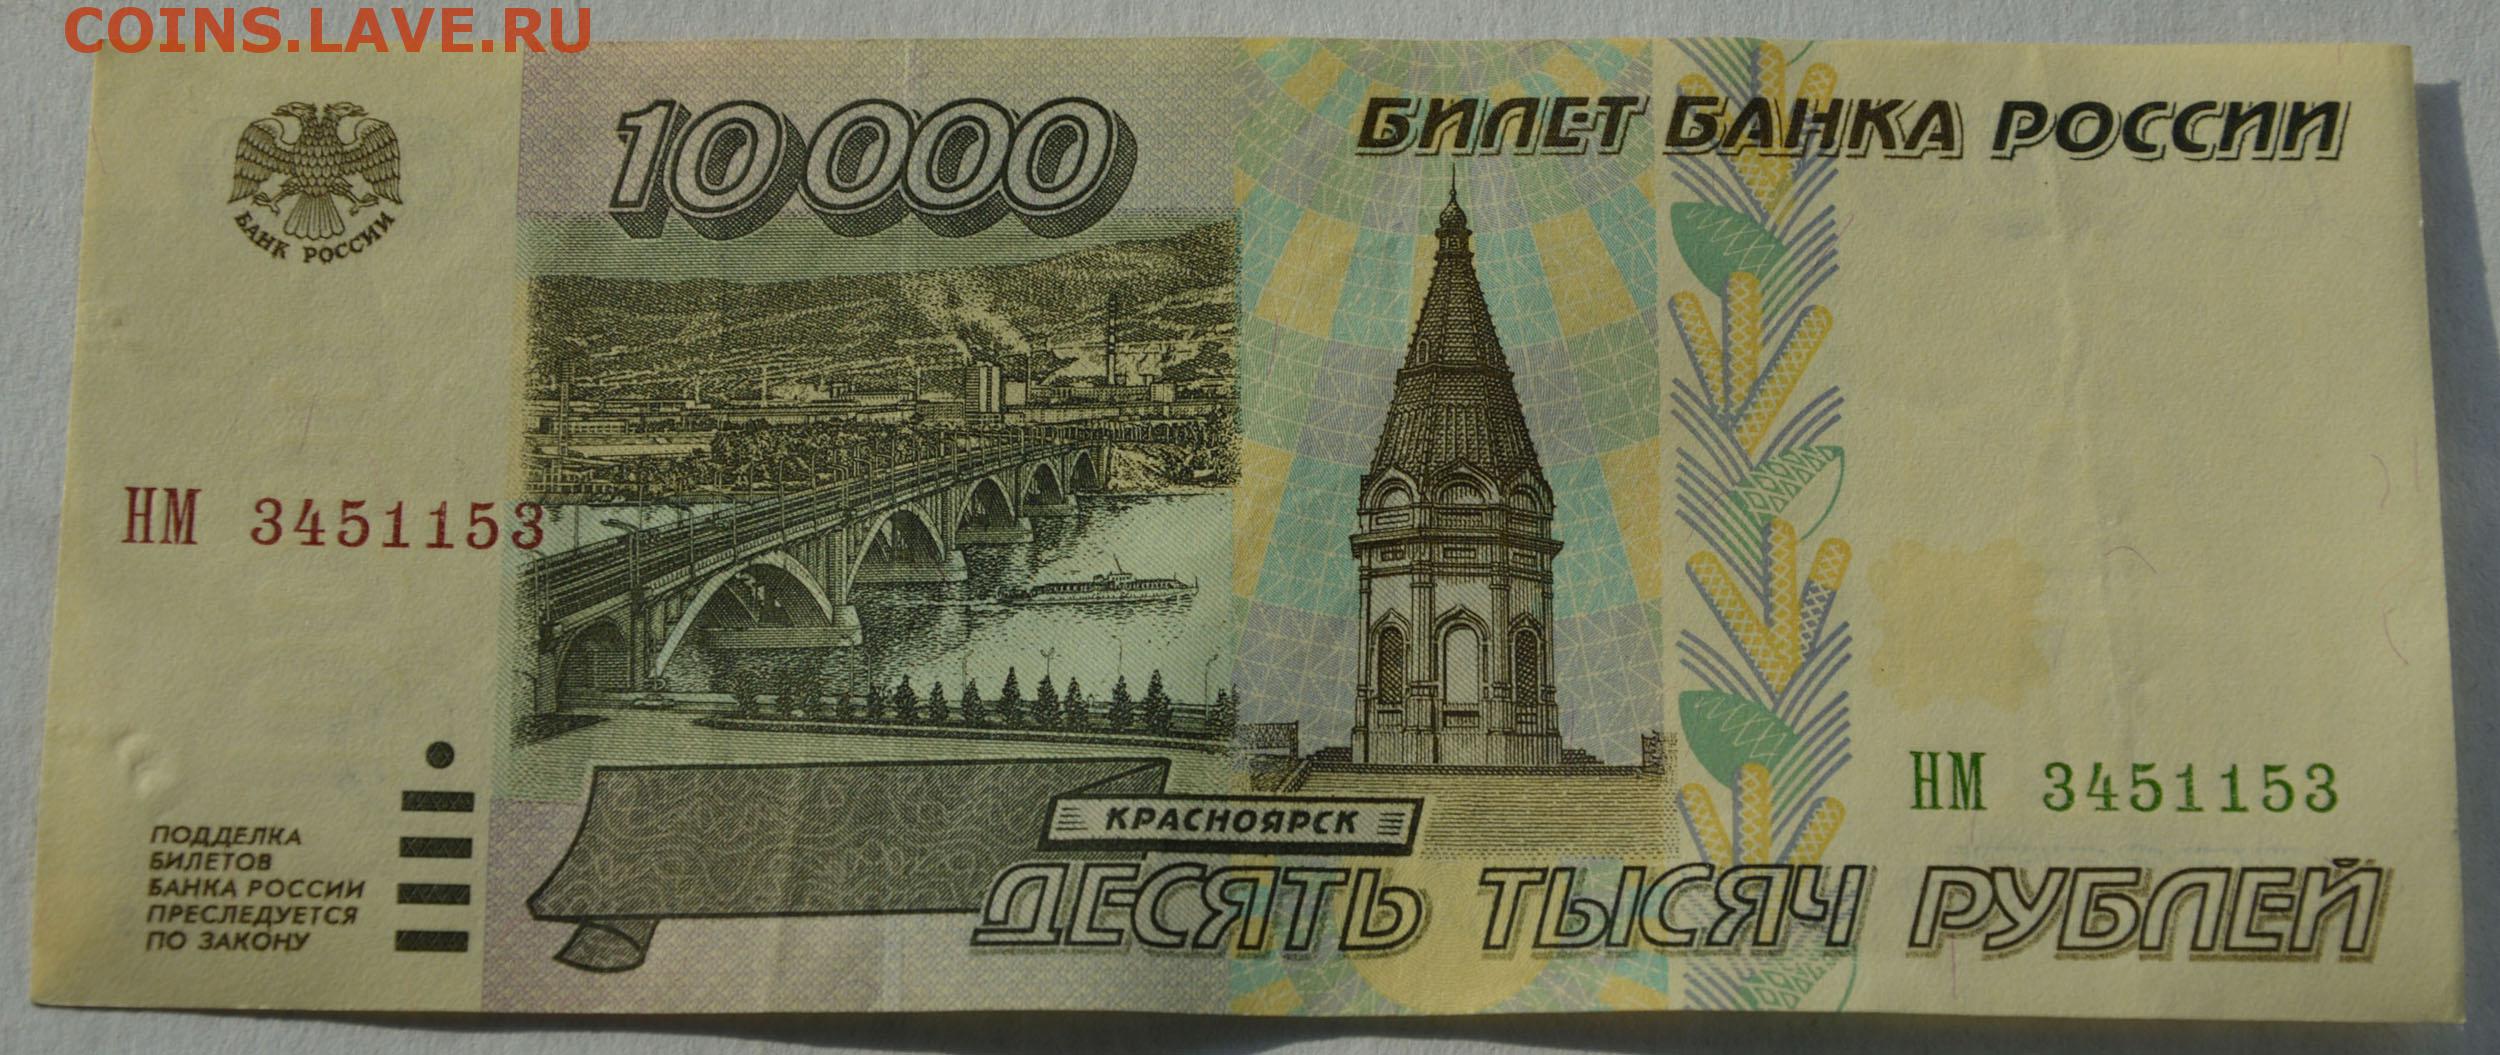 Десяти рублевые бумажные. Банкнота 10 рублей 1997 года модификация 2004. 10 Рублей банкнота. Бумажная купюра 10 руб. Российские 10 рублей бумажные.